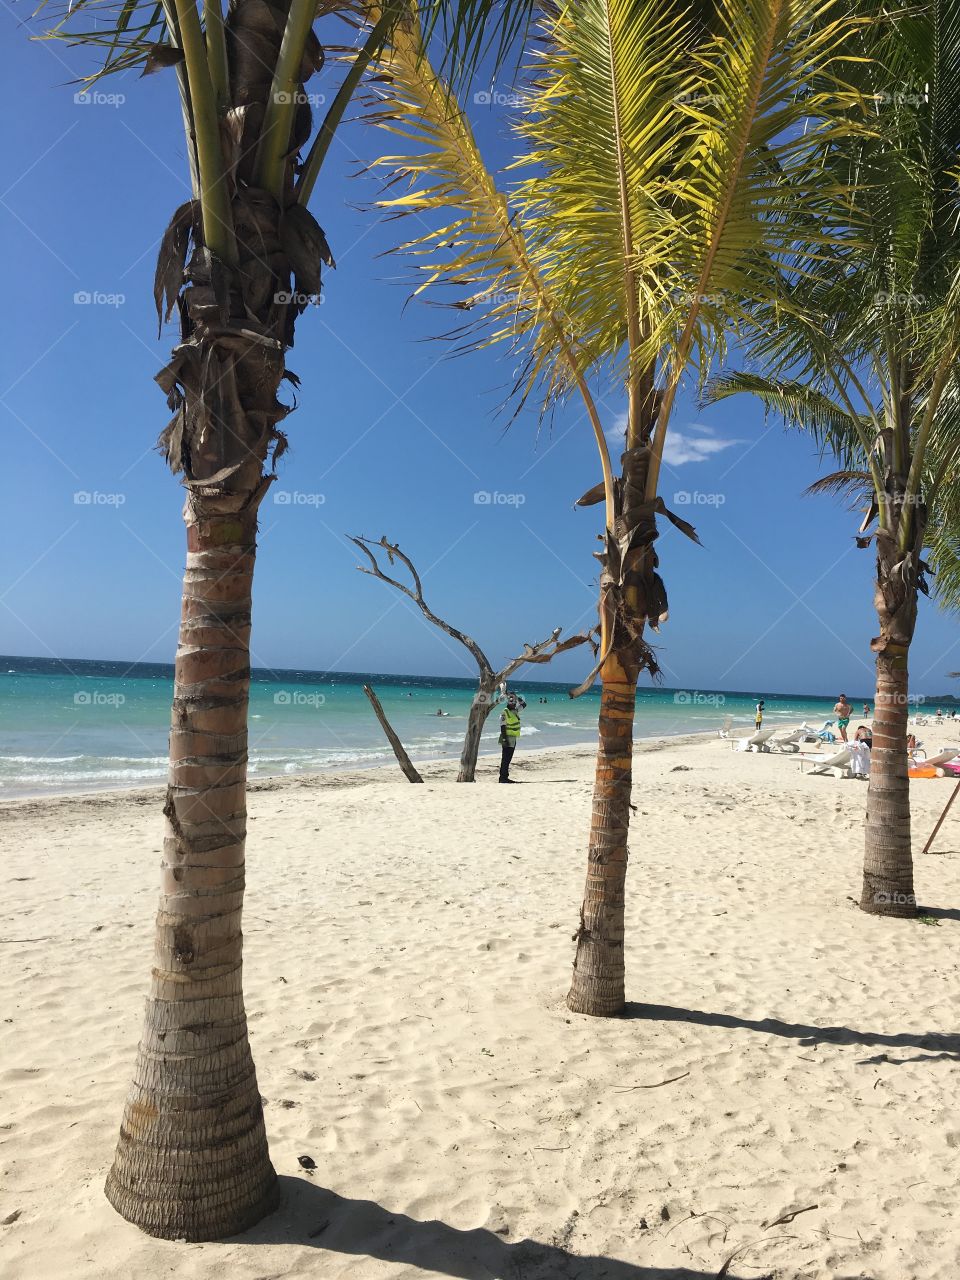 7 miles Beach in Jamaica